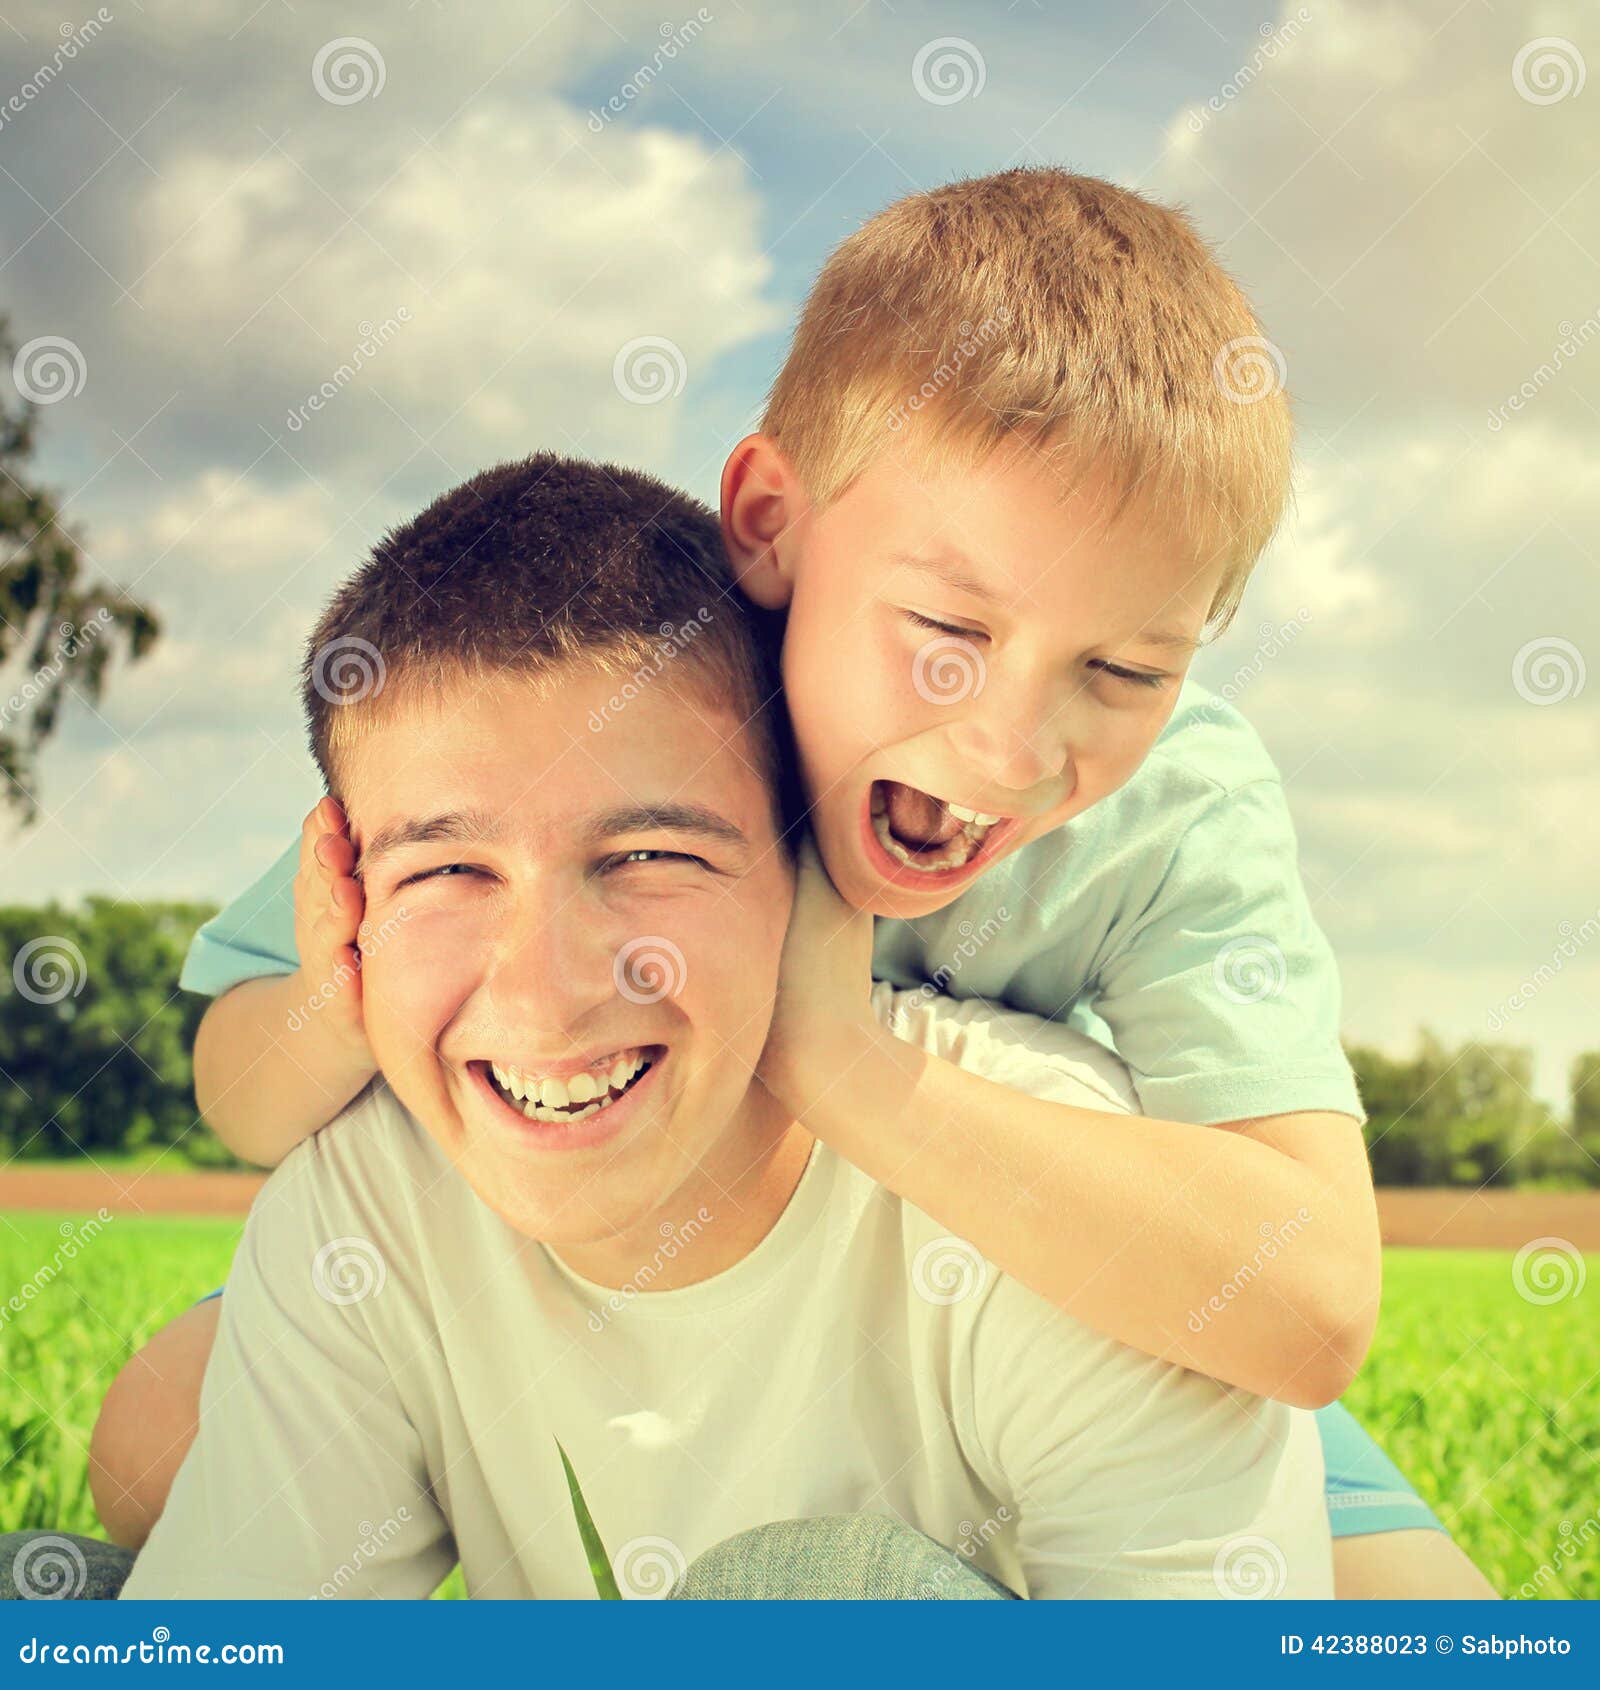 Два счастливых брата. Радостные братья. Счастливые братья фото. 3 Воспитанных счастливых брата. Картинка лицо брата радостное.